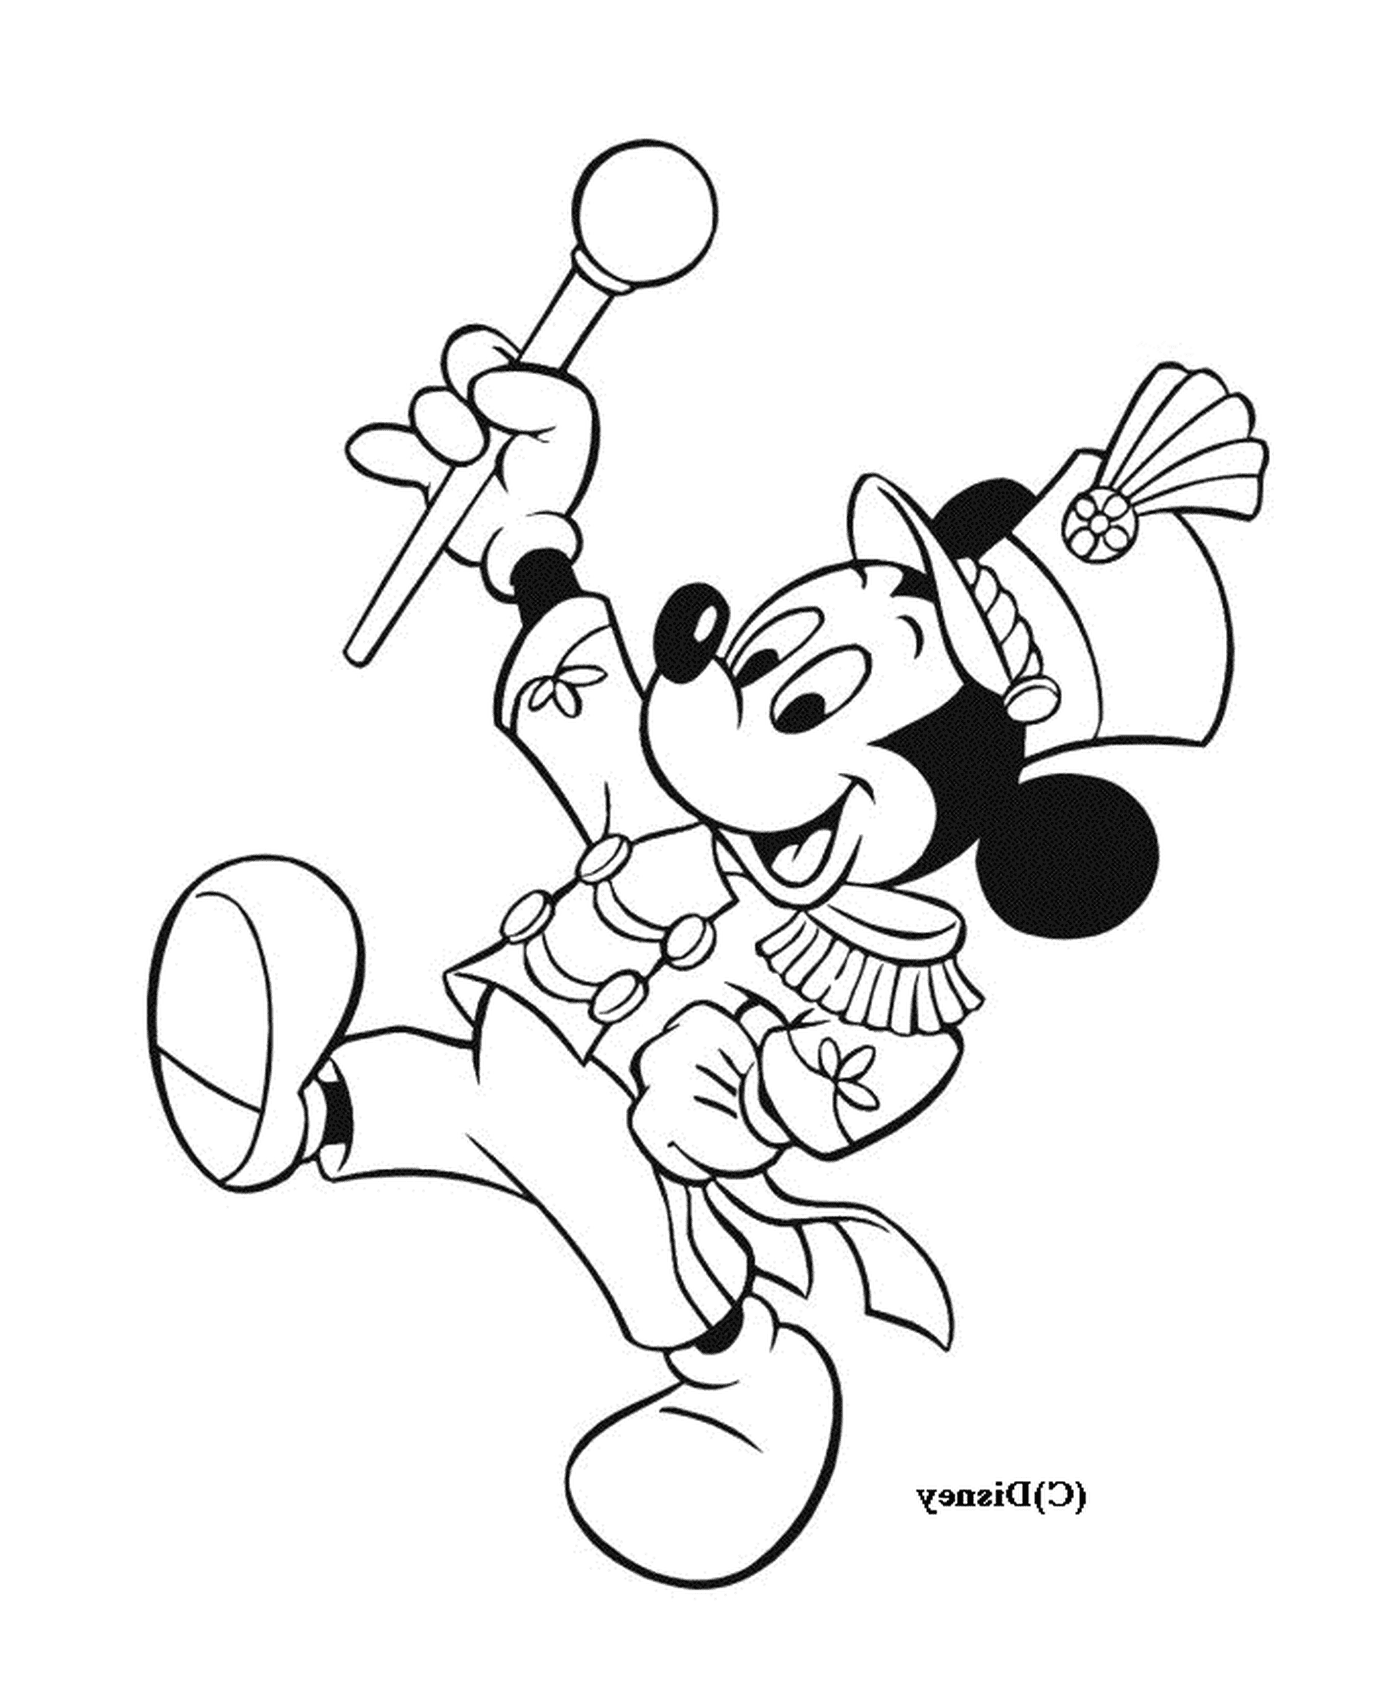  Mickey como líder de torcida 